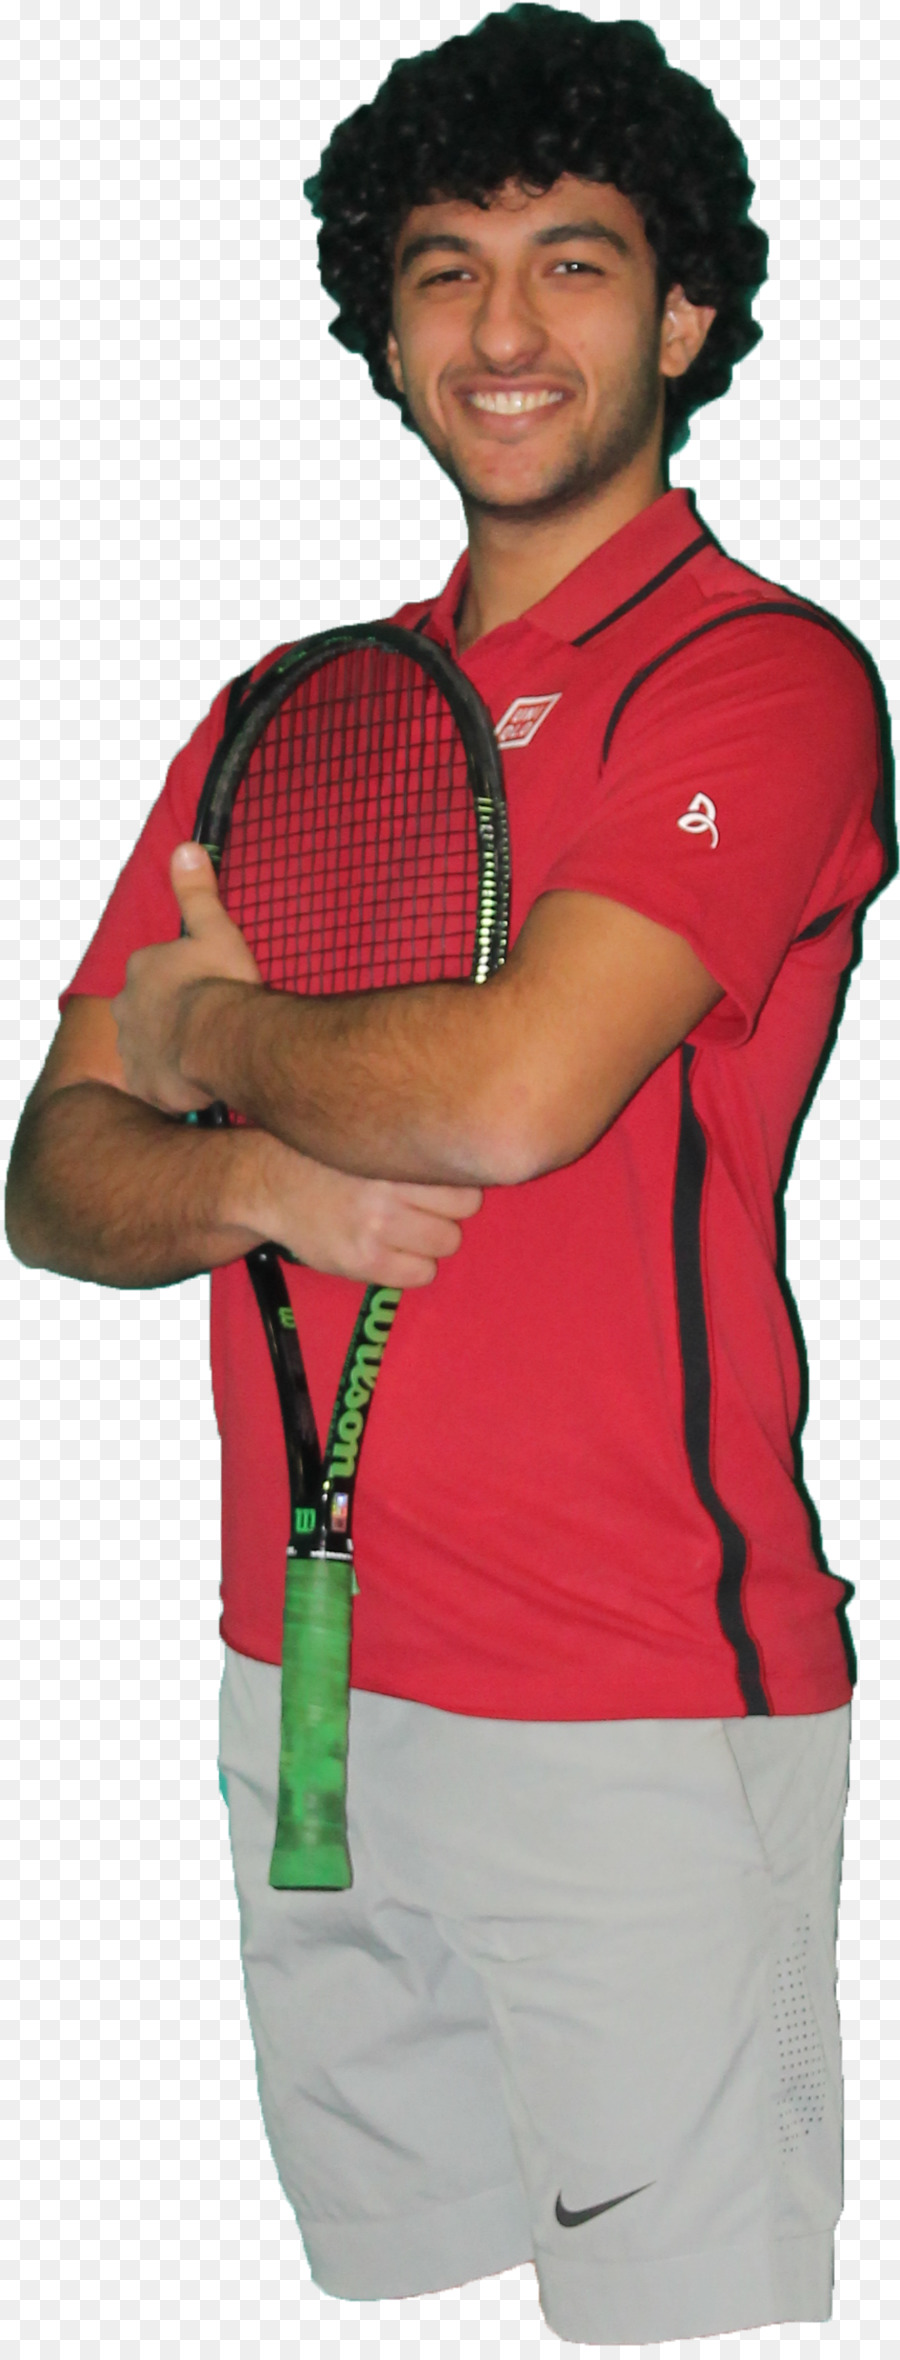 Trung Đông Đại học Kỹ thuật T-shirt Tennis Tay áo - novak